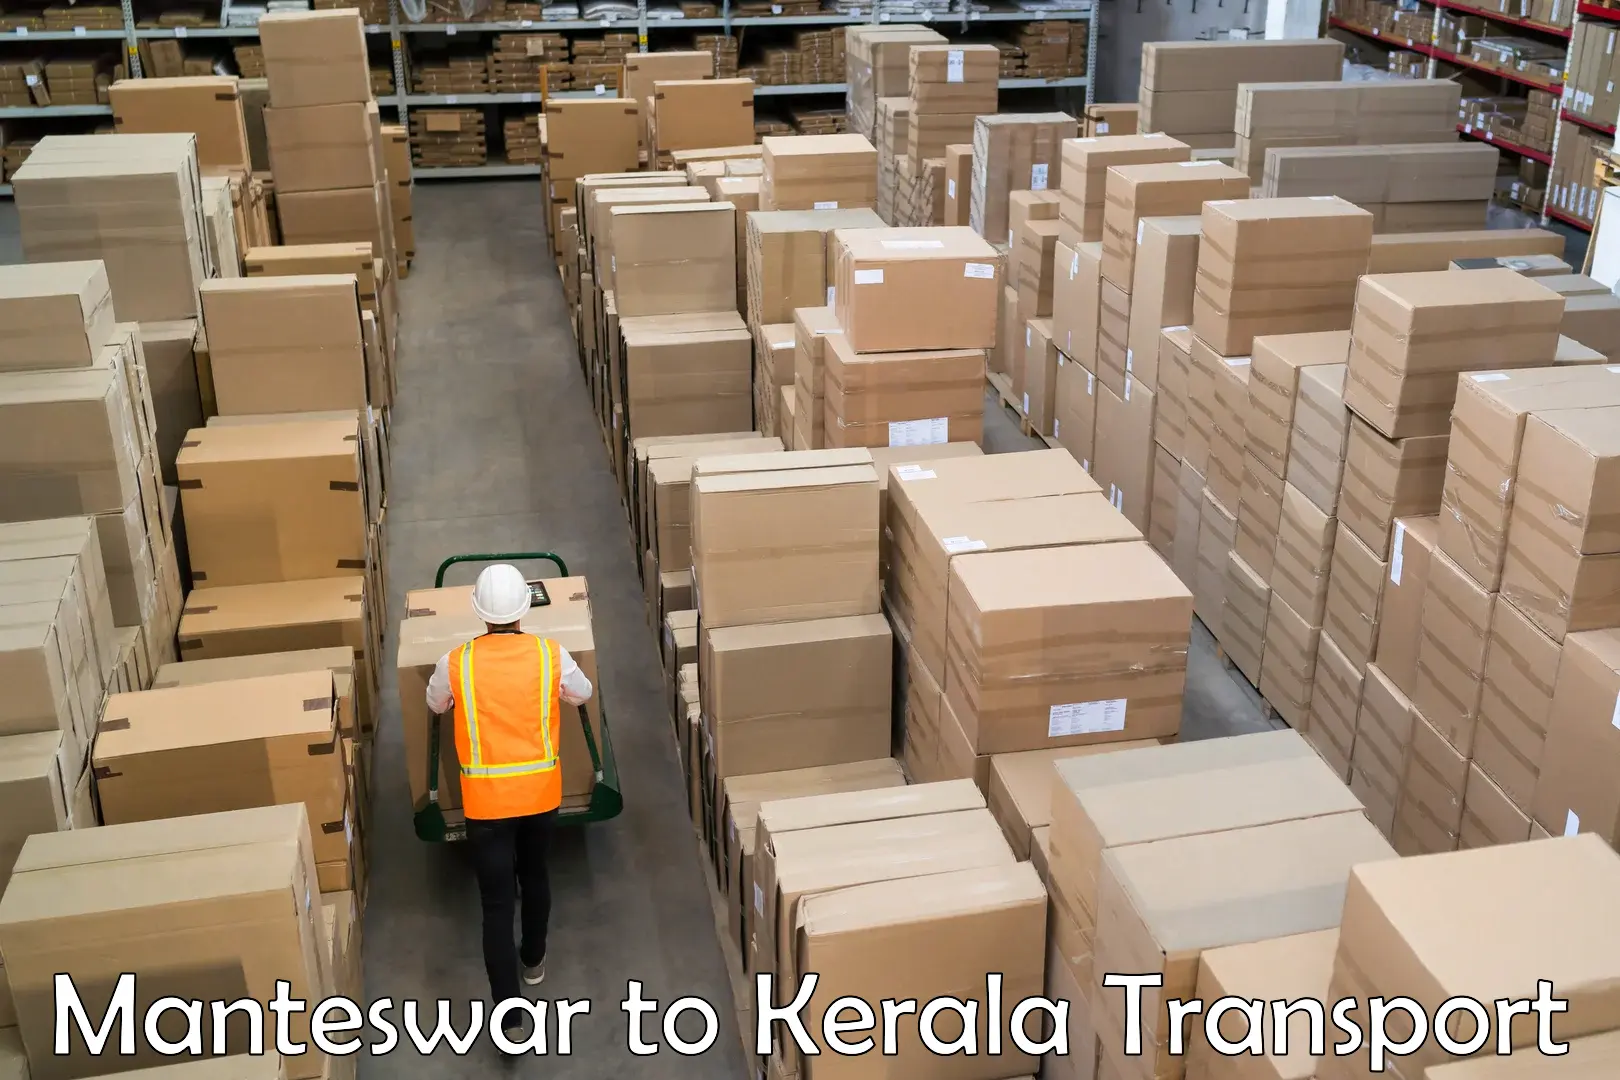 Furniture transport service Manteswar to Palai